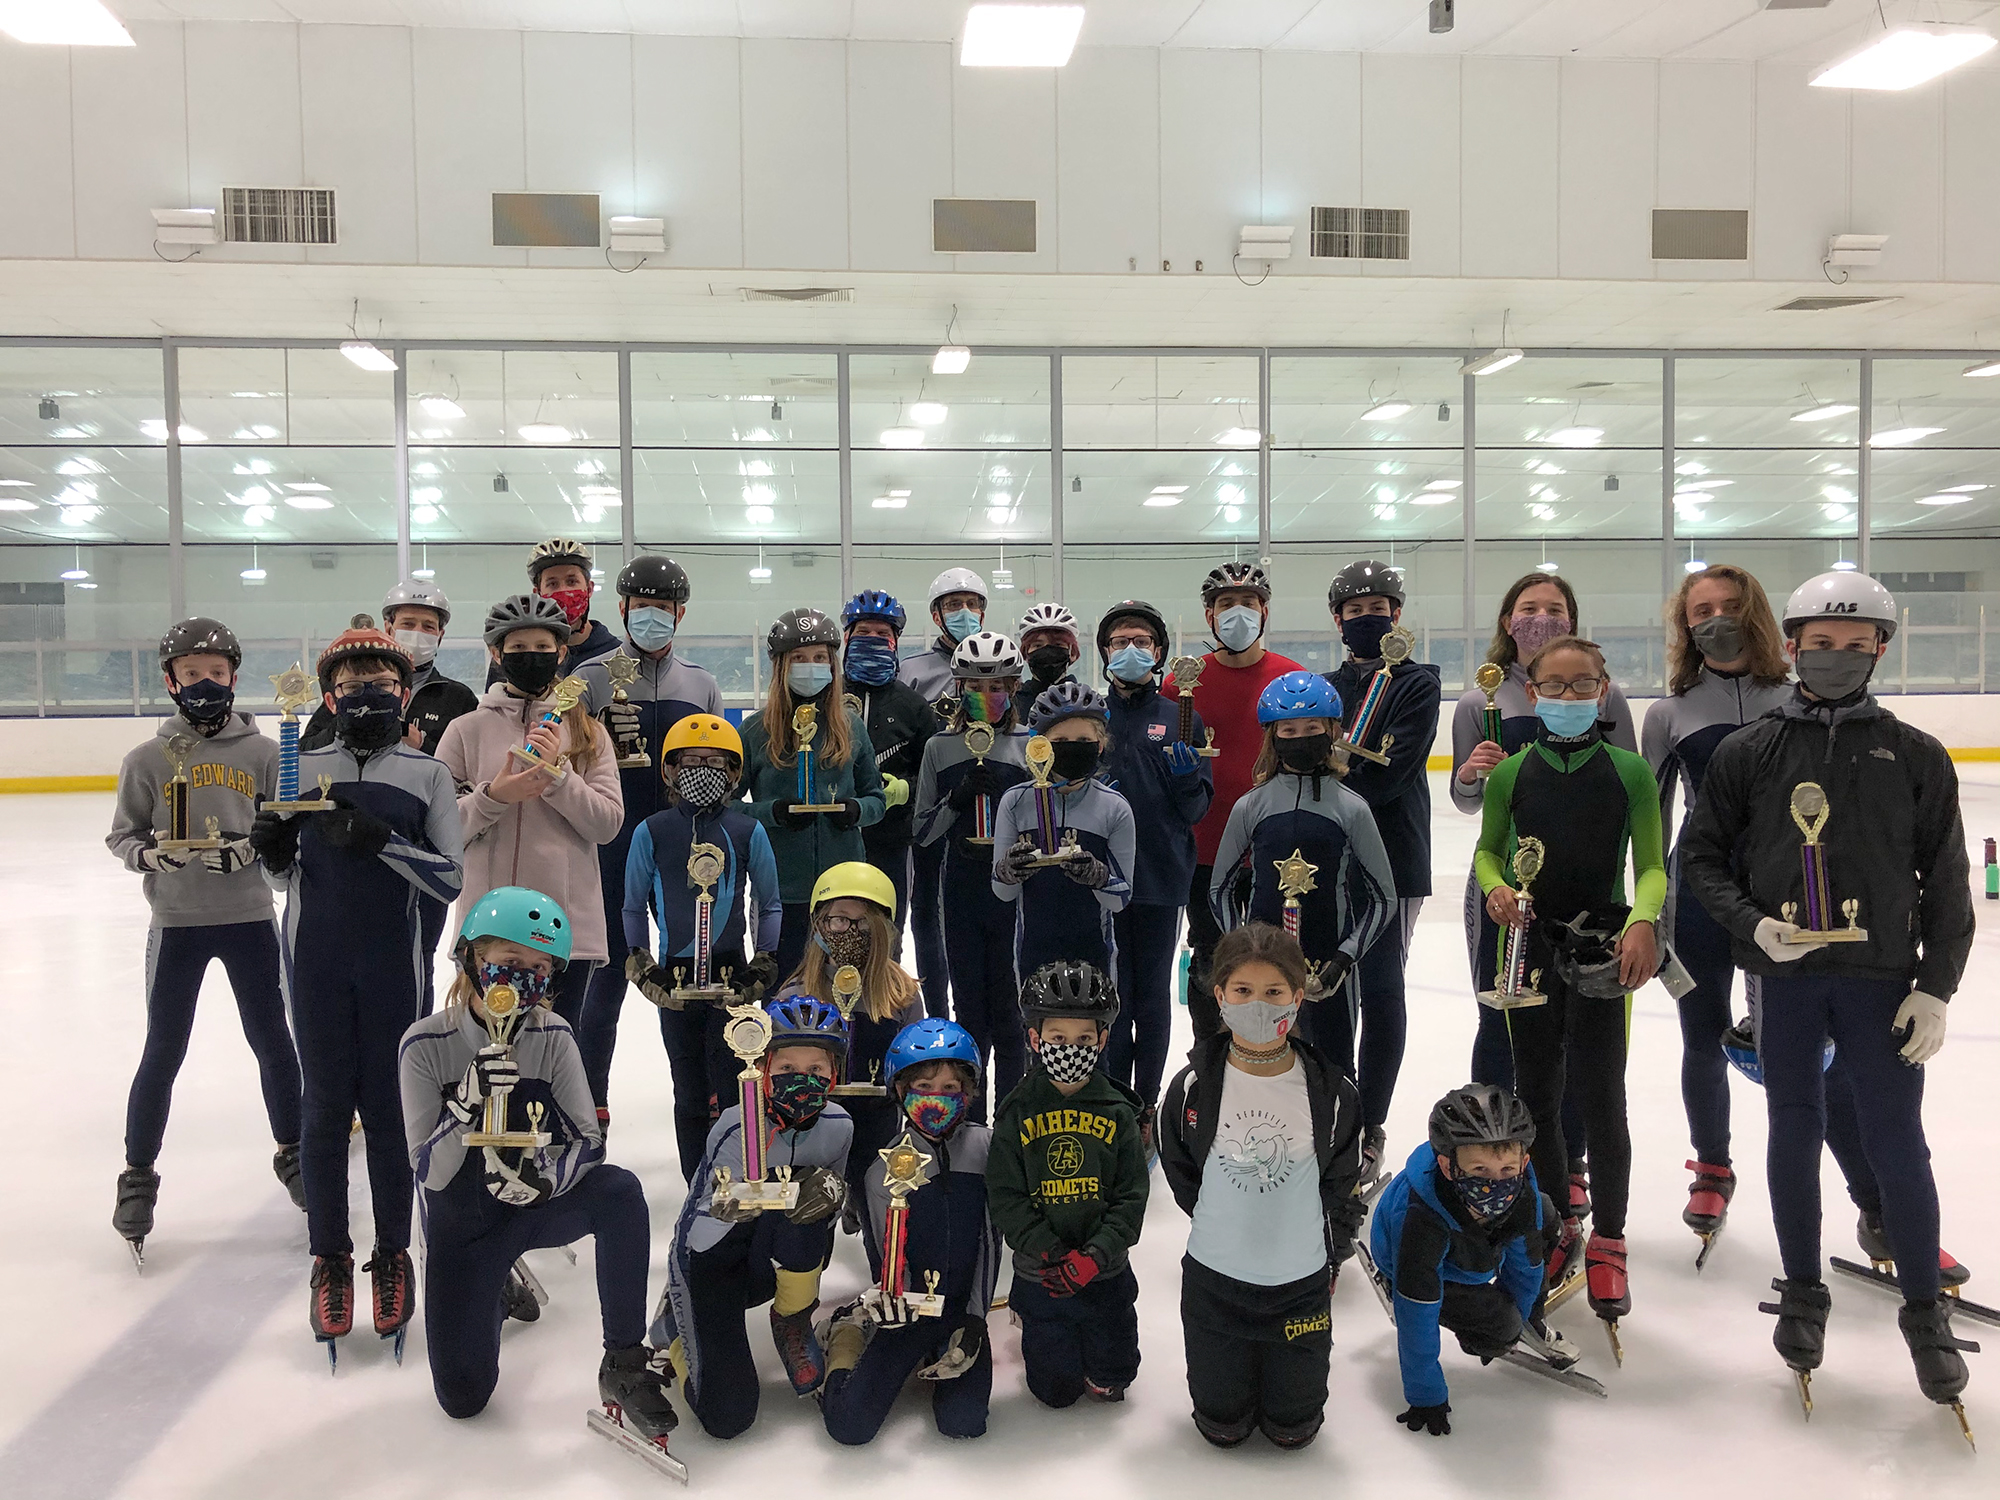 The 2015 Lakewood Speed Skating Club Team